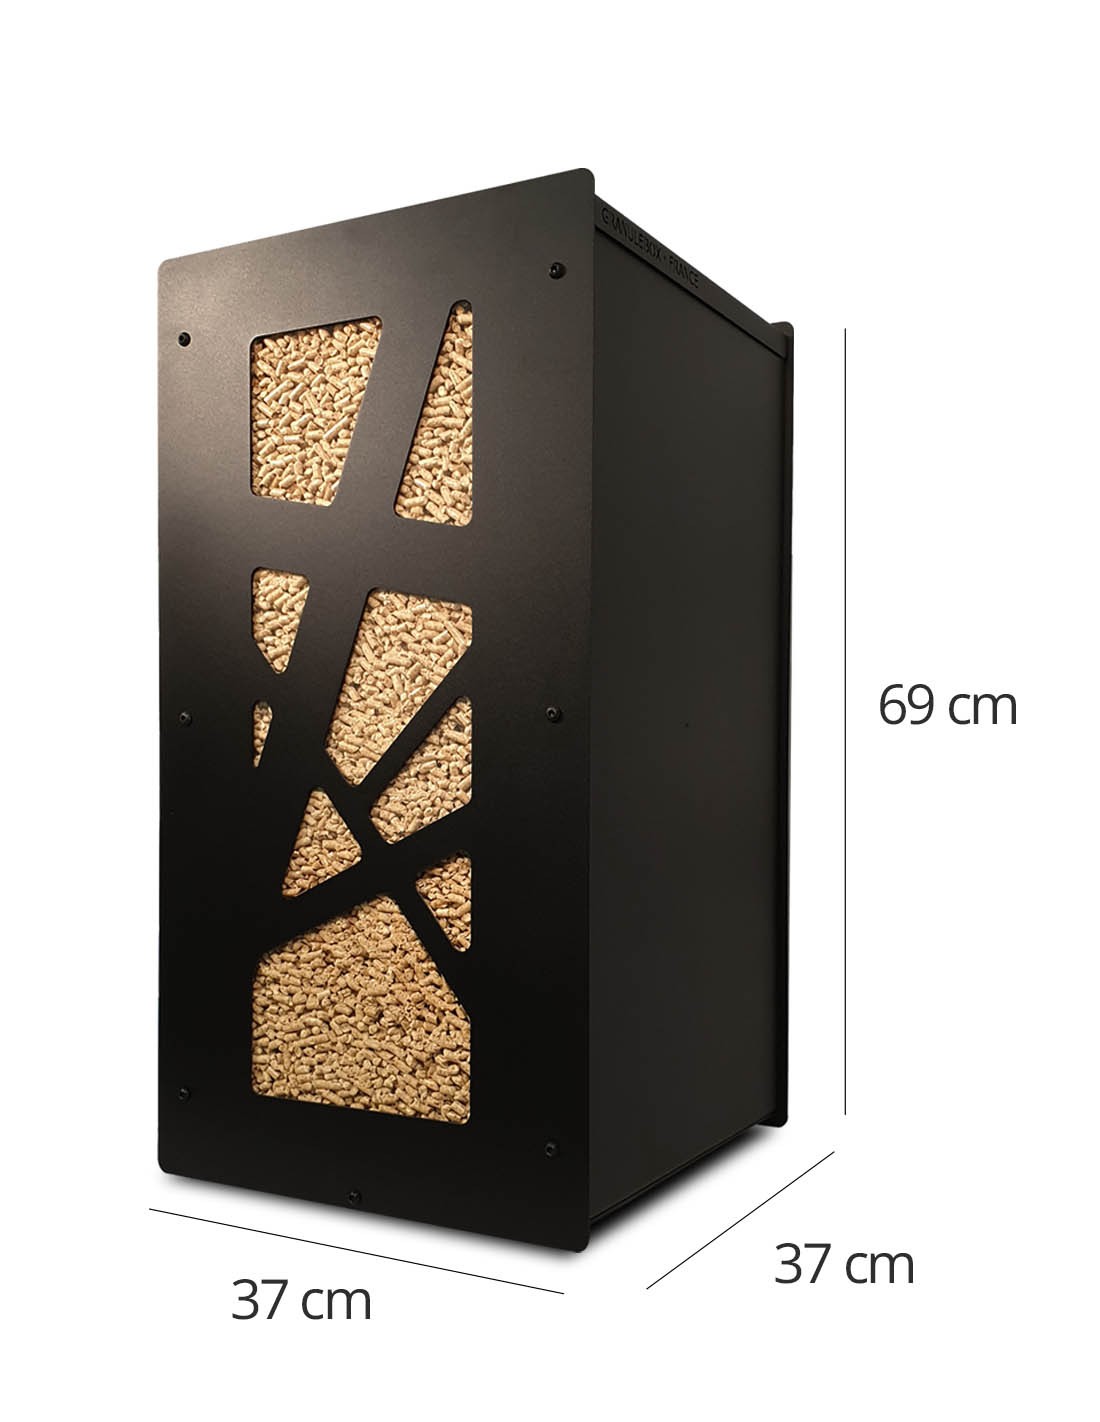 GranuleBox, un coffre à pellets doté d'un filtre à poussière pour